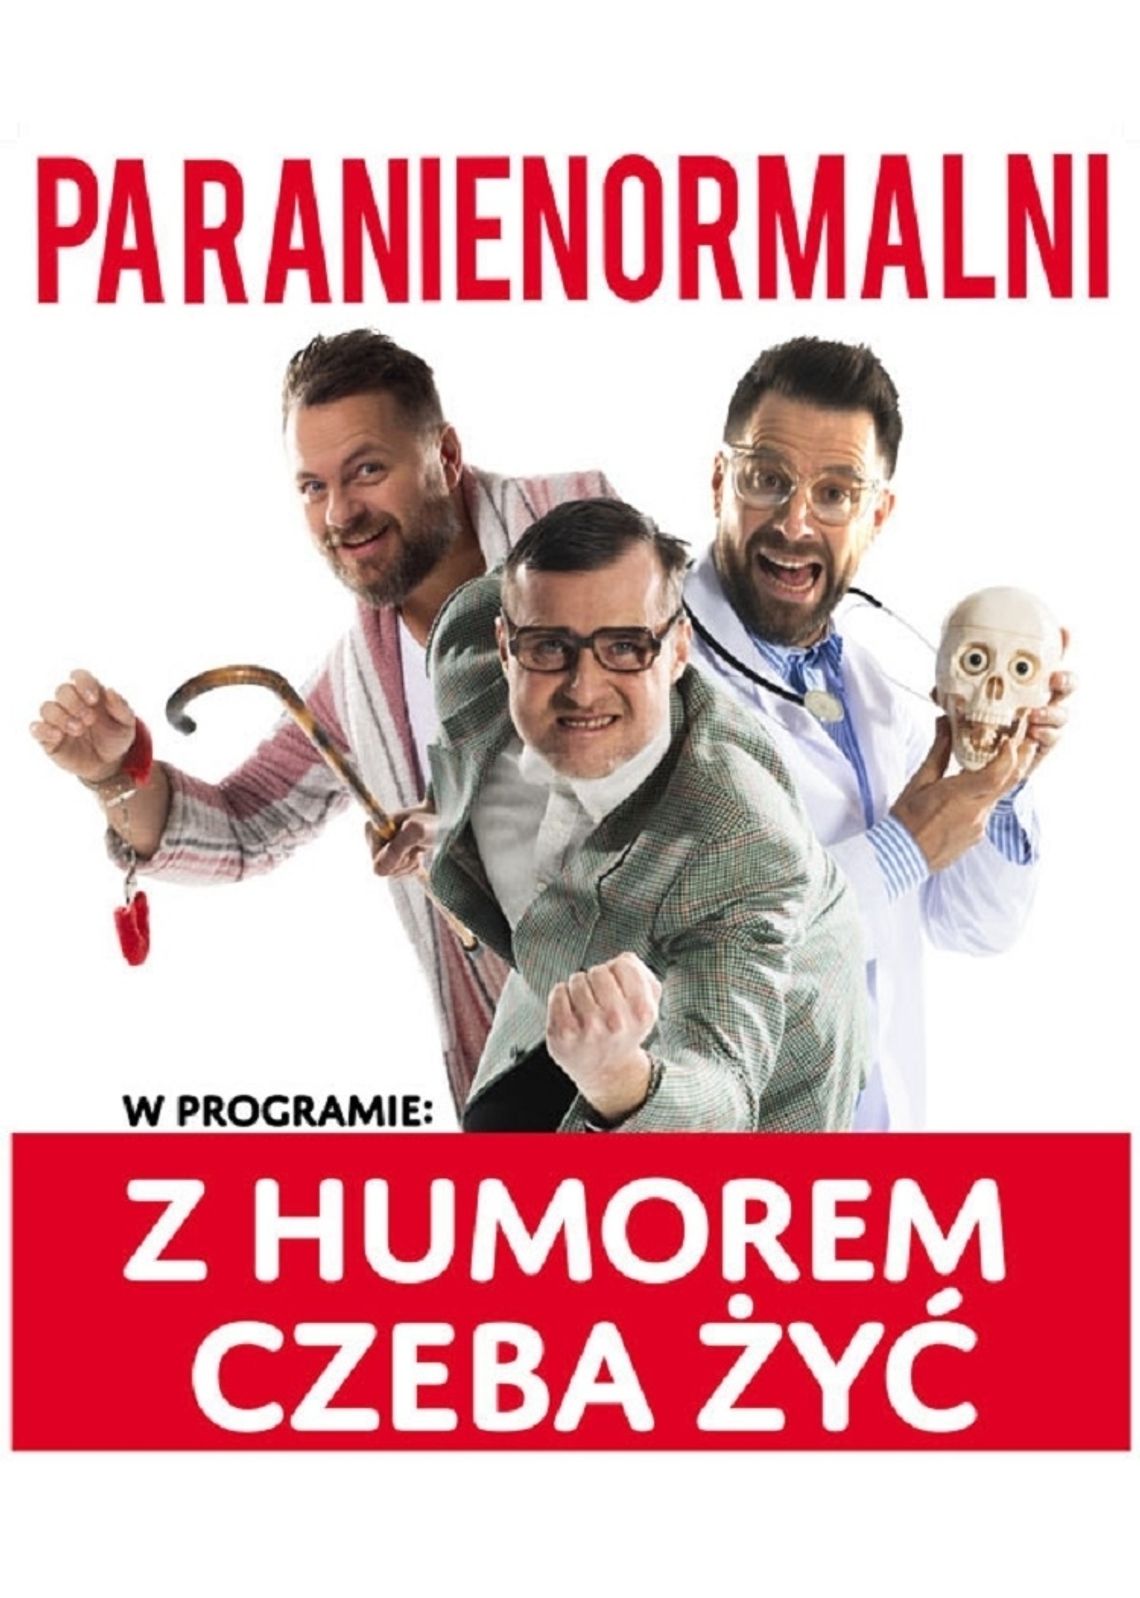 Występ Kabaretu Paranienormalni odbędzie się w innym terminie